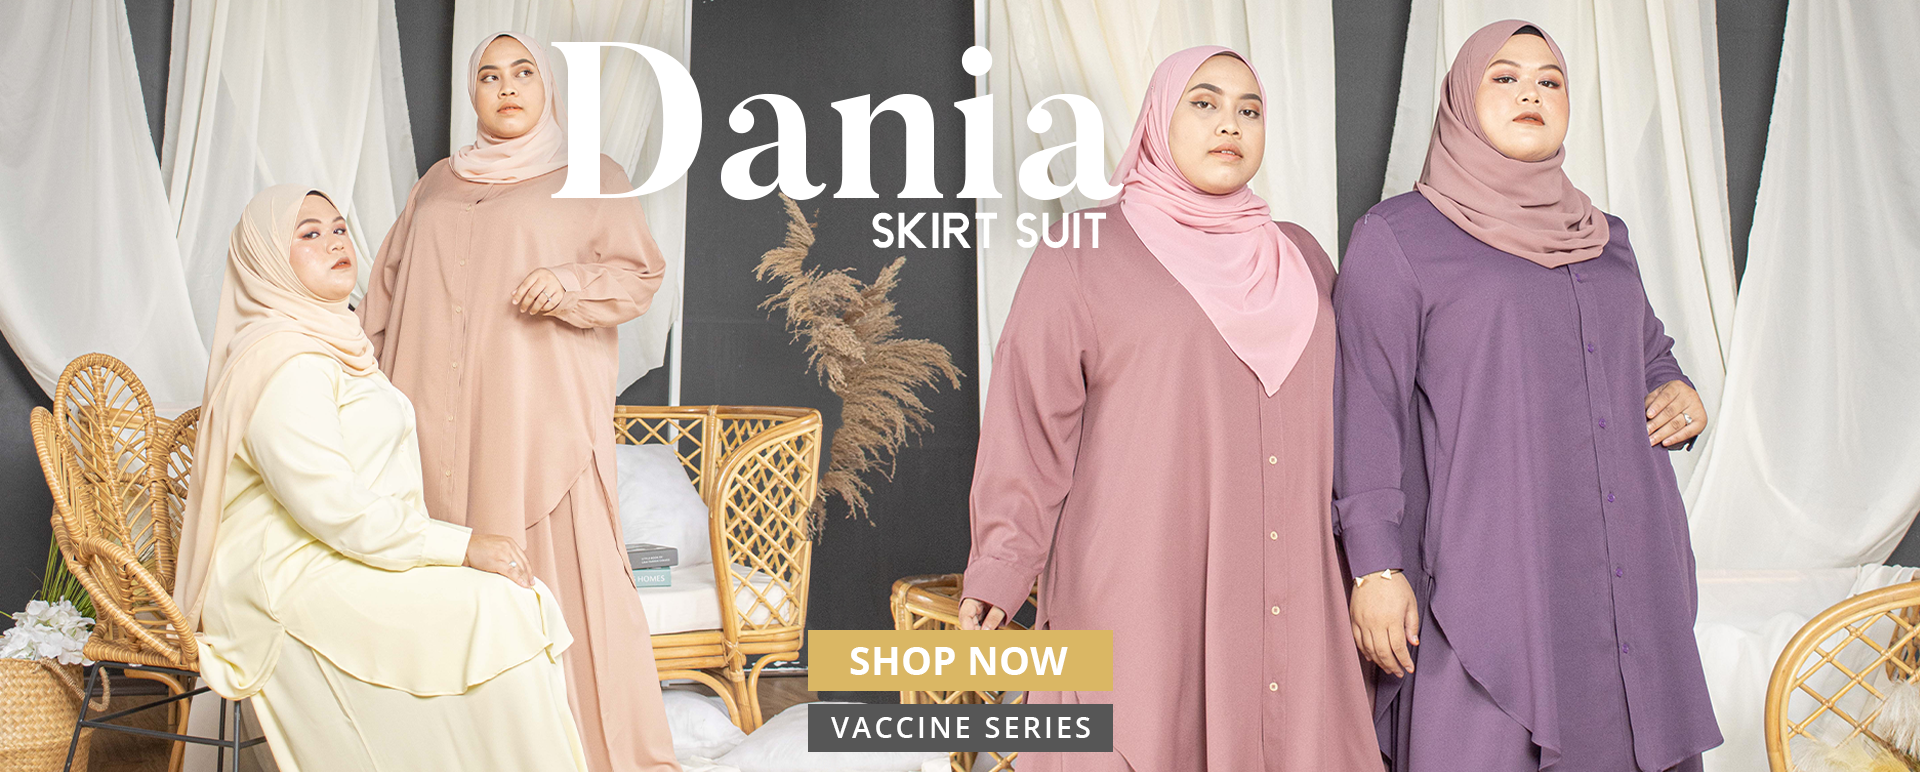 Dania Skirt Suit